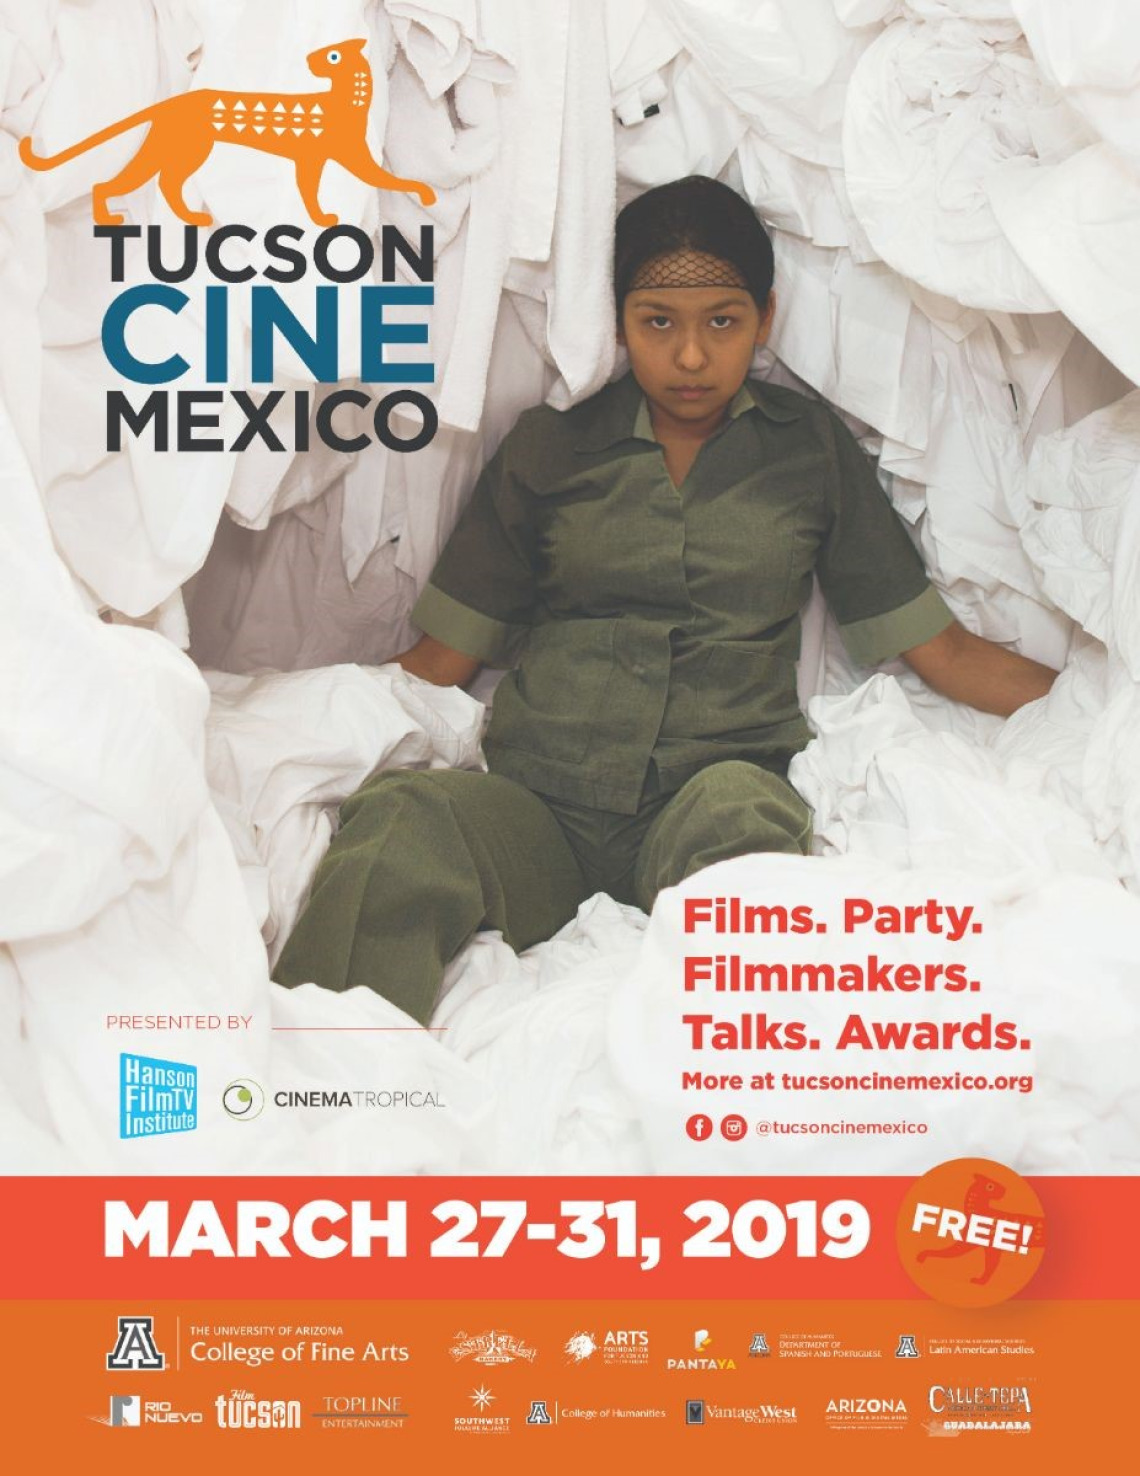 Tucson Cine Mexico flyer